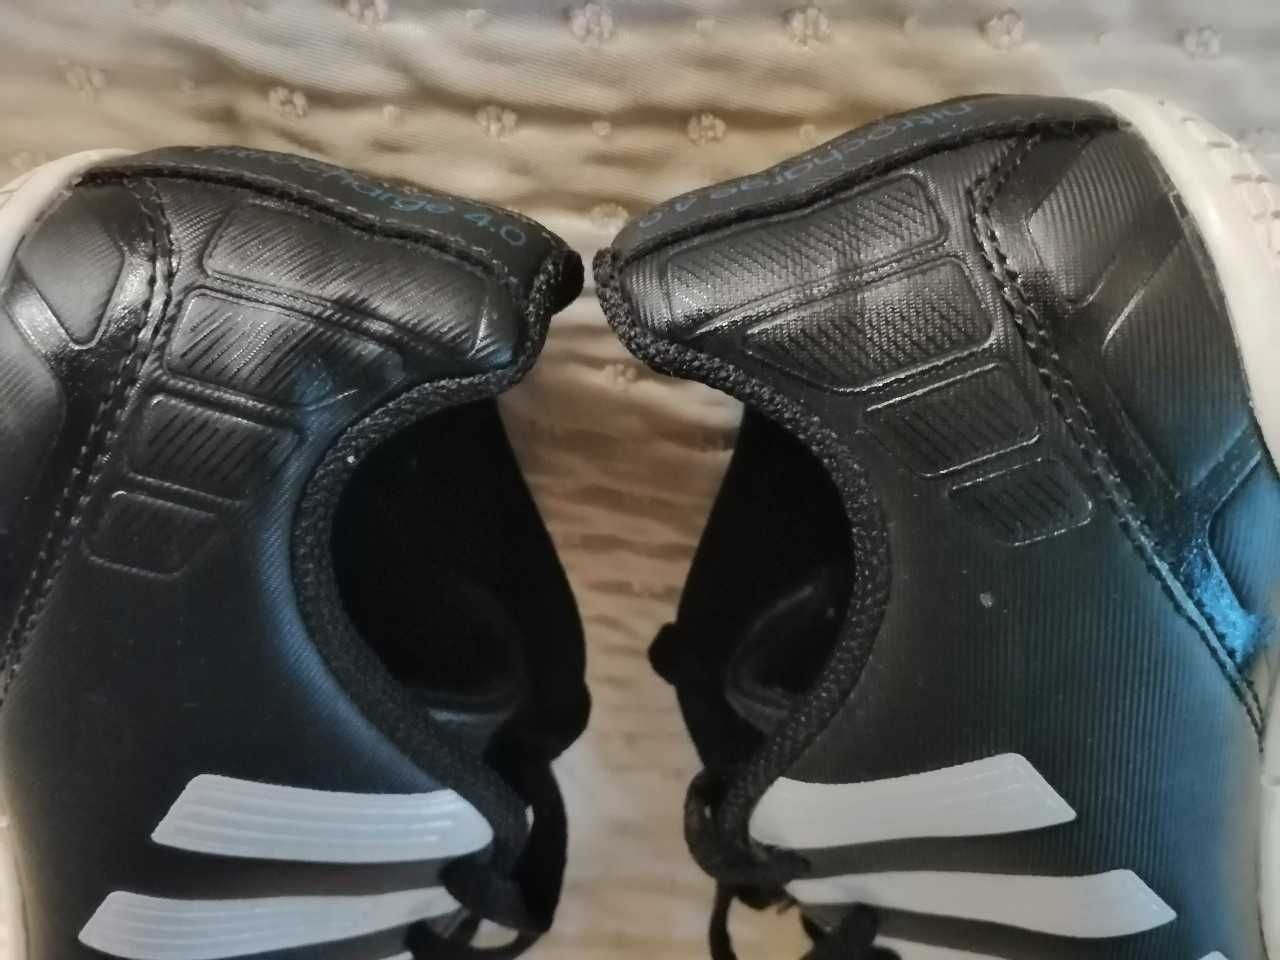 Adidas 4.0 buciki rozm. 36 wkładka 22 cm wkładka czarne